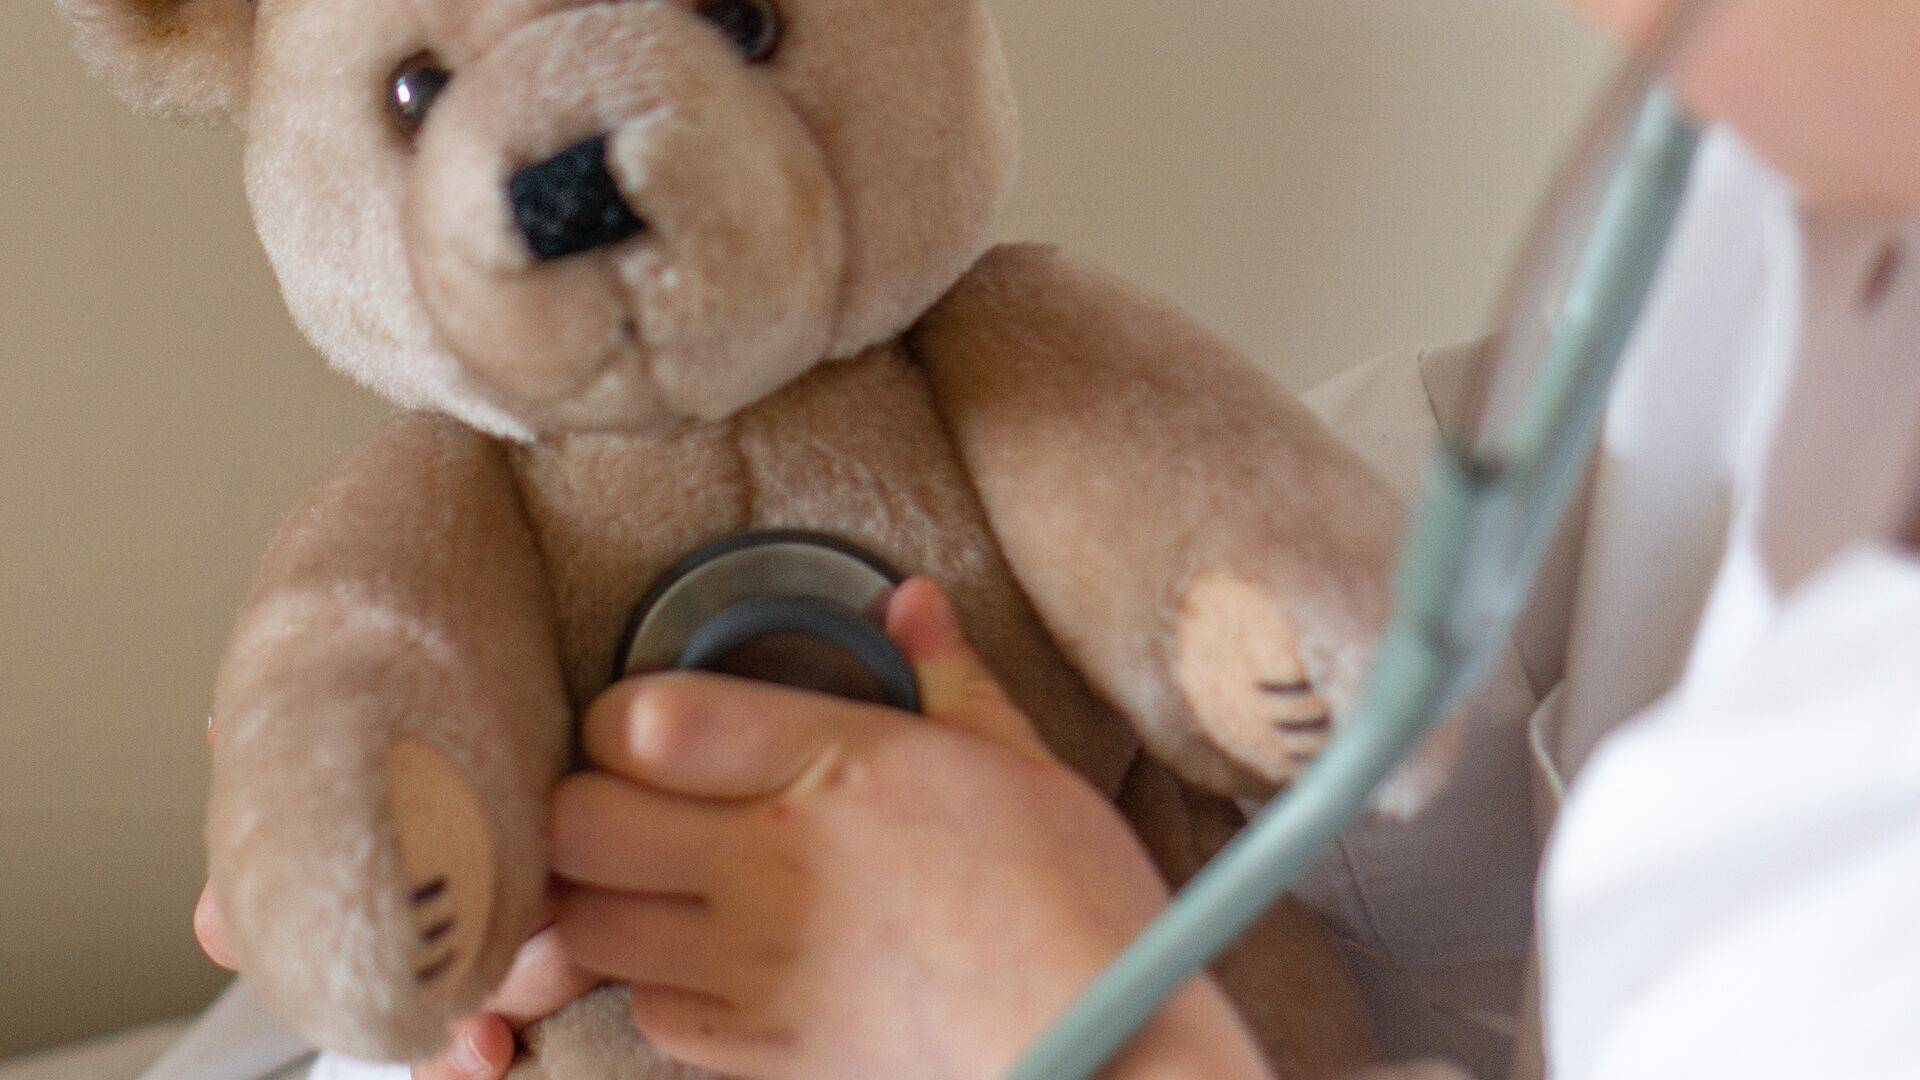 Kind in een witte jas speelt doktertje – met een stethoscoop wordt de knuffelbeer onderzocht.